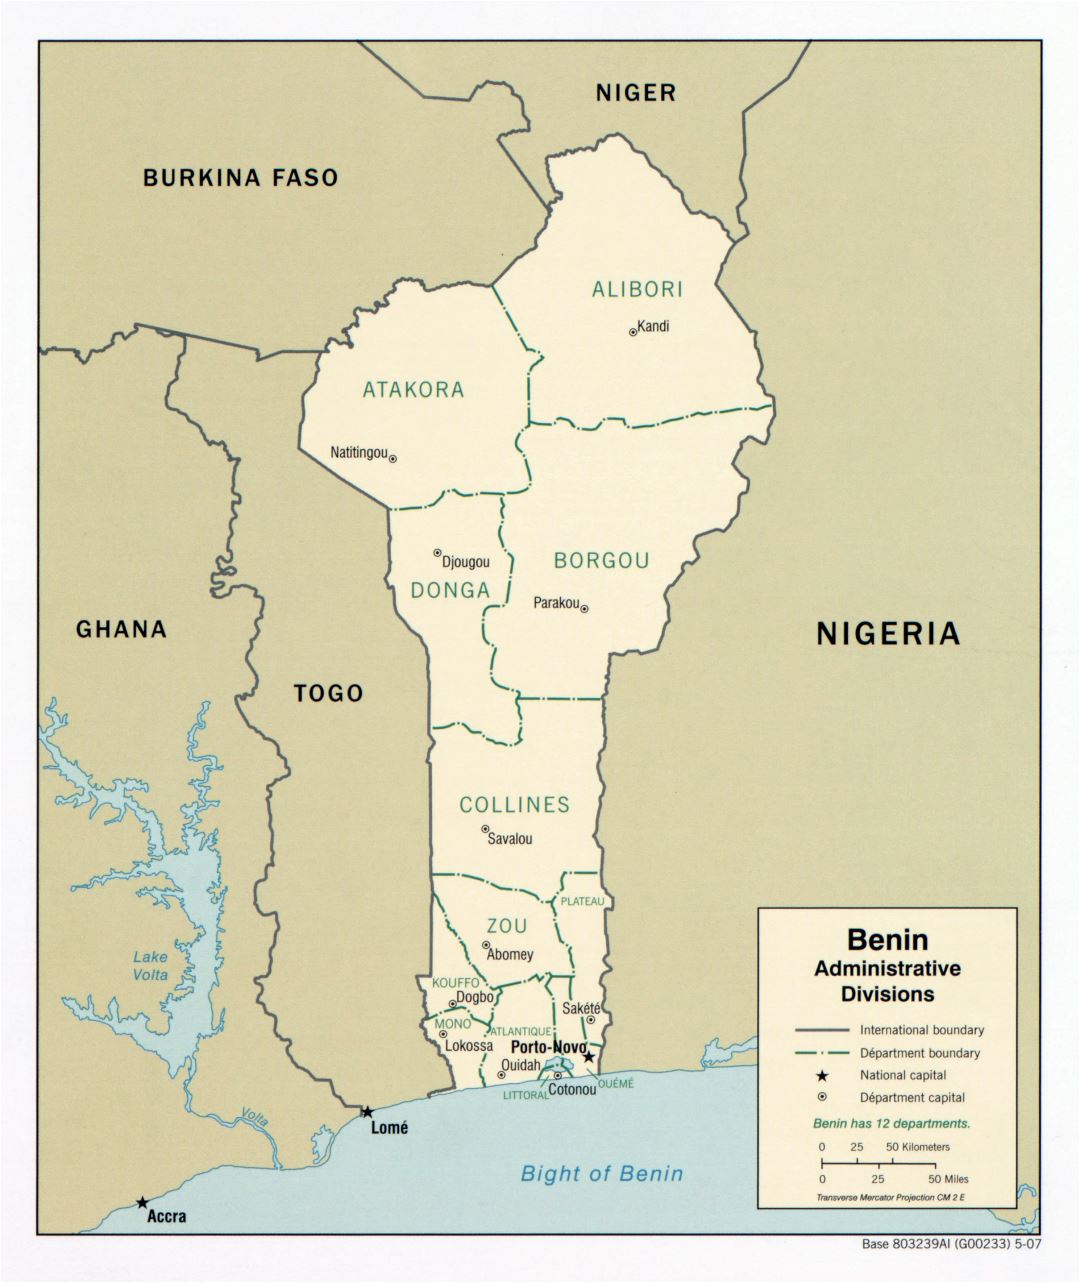 Крупномасштабная карта административных делений Бенина - 2007